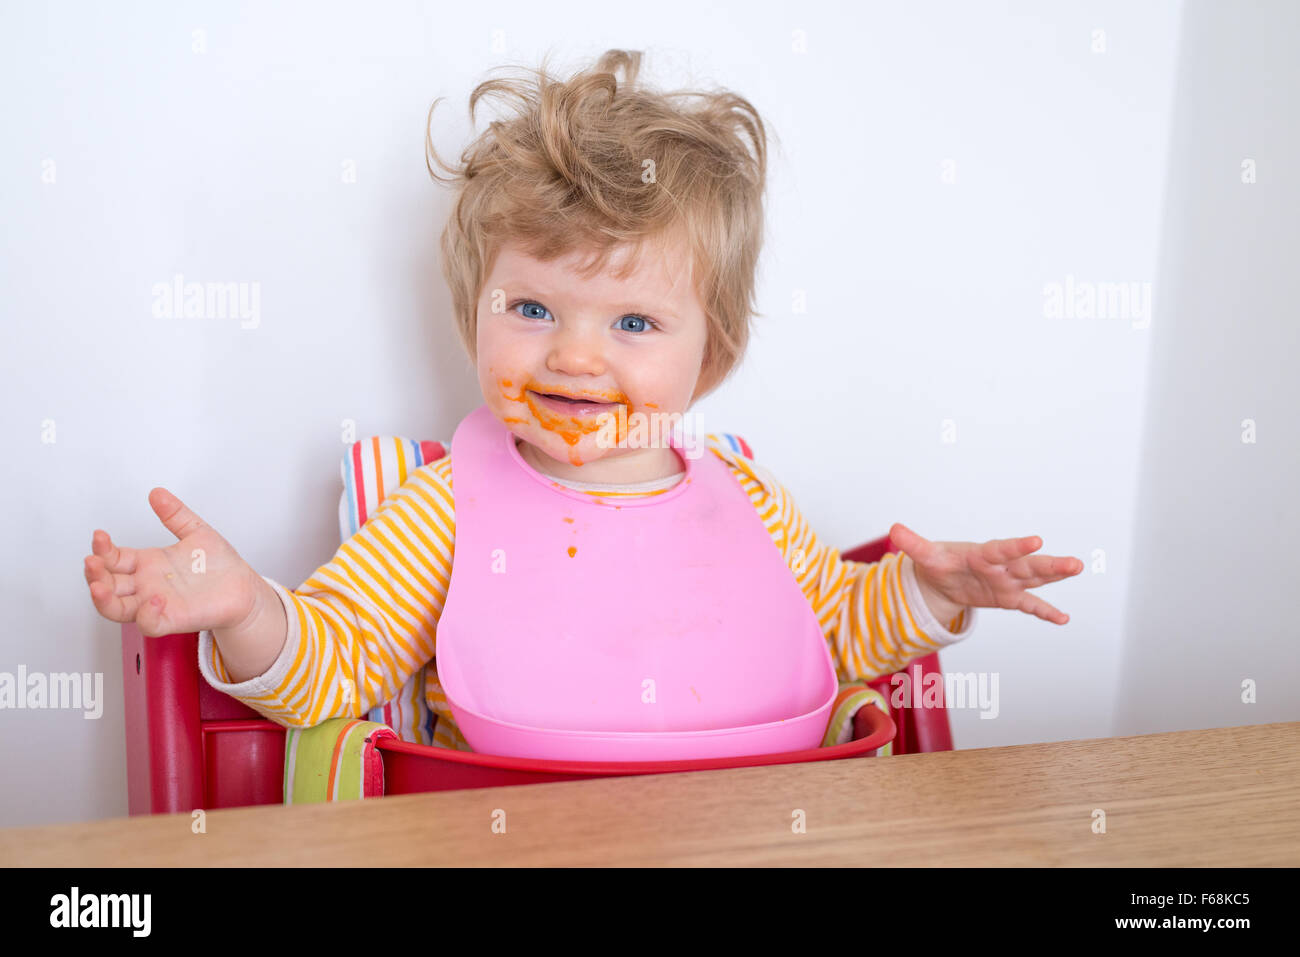 Bebé de Un año de edad comiendo messily, Inglaterra, Reino Unido. Foto de stock